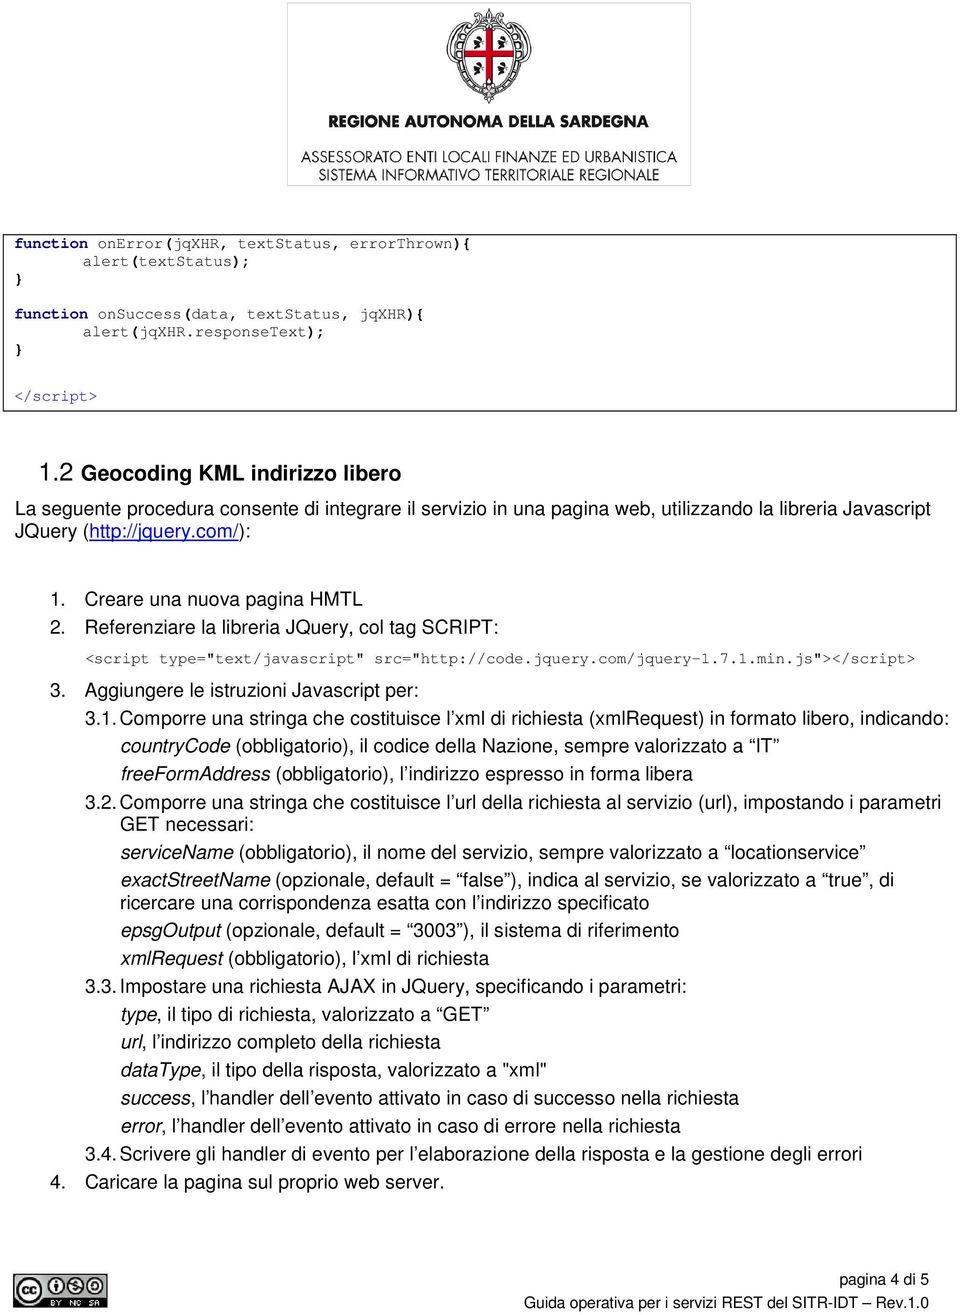 Creare una nuova pagina HMTL 2. Referenziare la libreria JQuery, col tag SCRIPT: 3. Aggiungere le istruzioni Javascript per: 3.1.